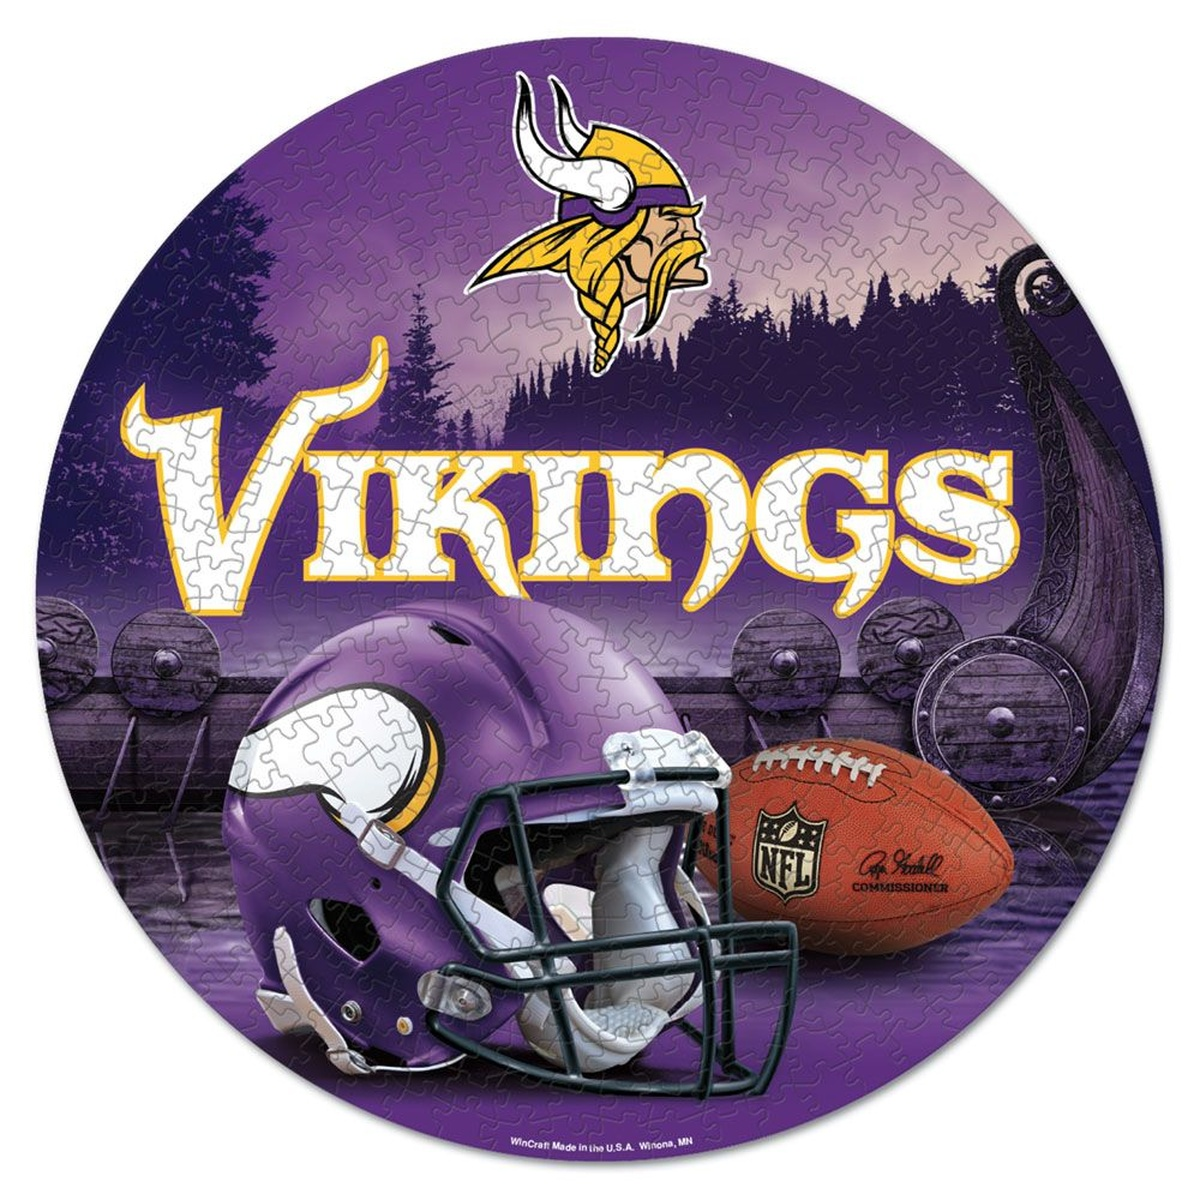 500 WINCRAFT Puzzle Teile NFL Minnesota Vikings Football